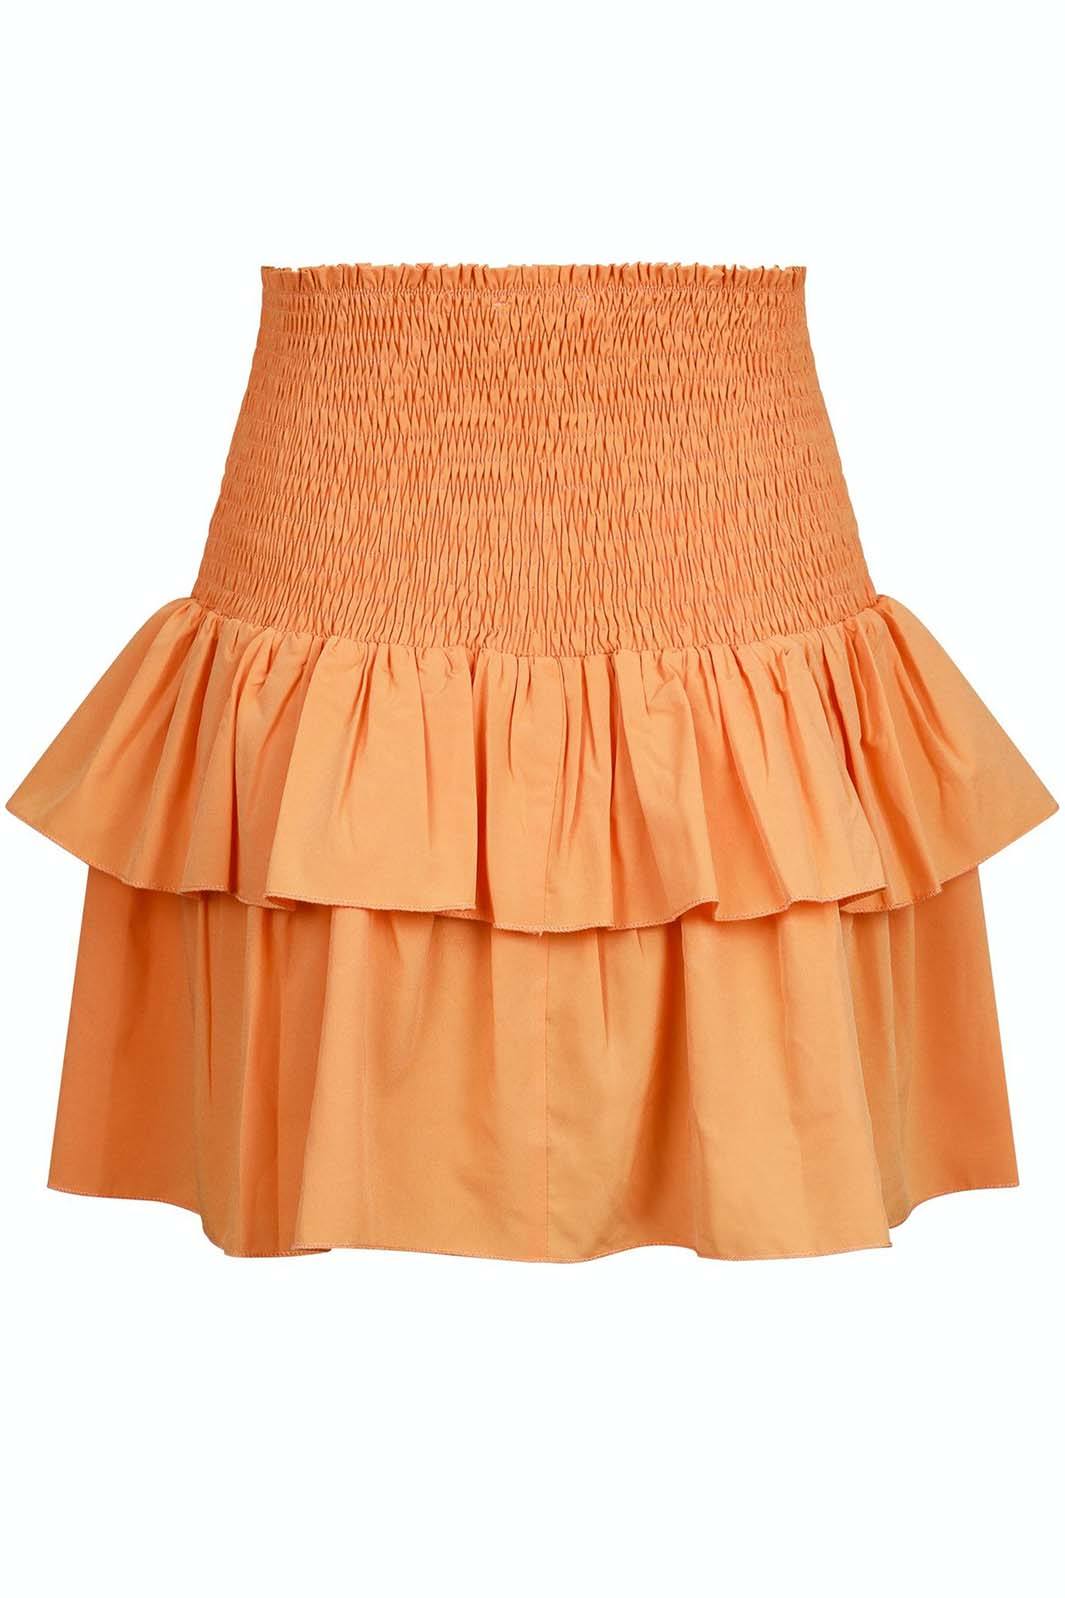 Neo Noir - Carin R Skirt - Tangerine Nederdele 